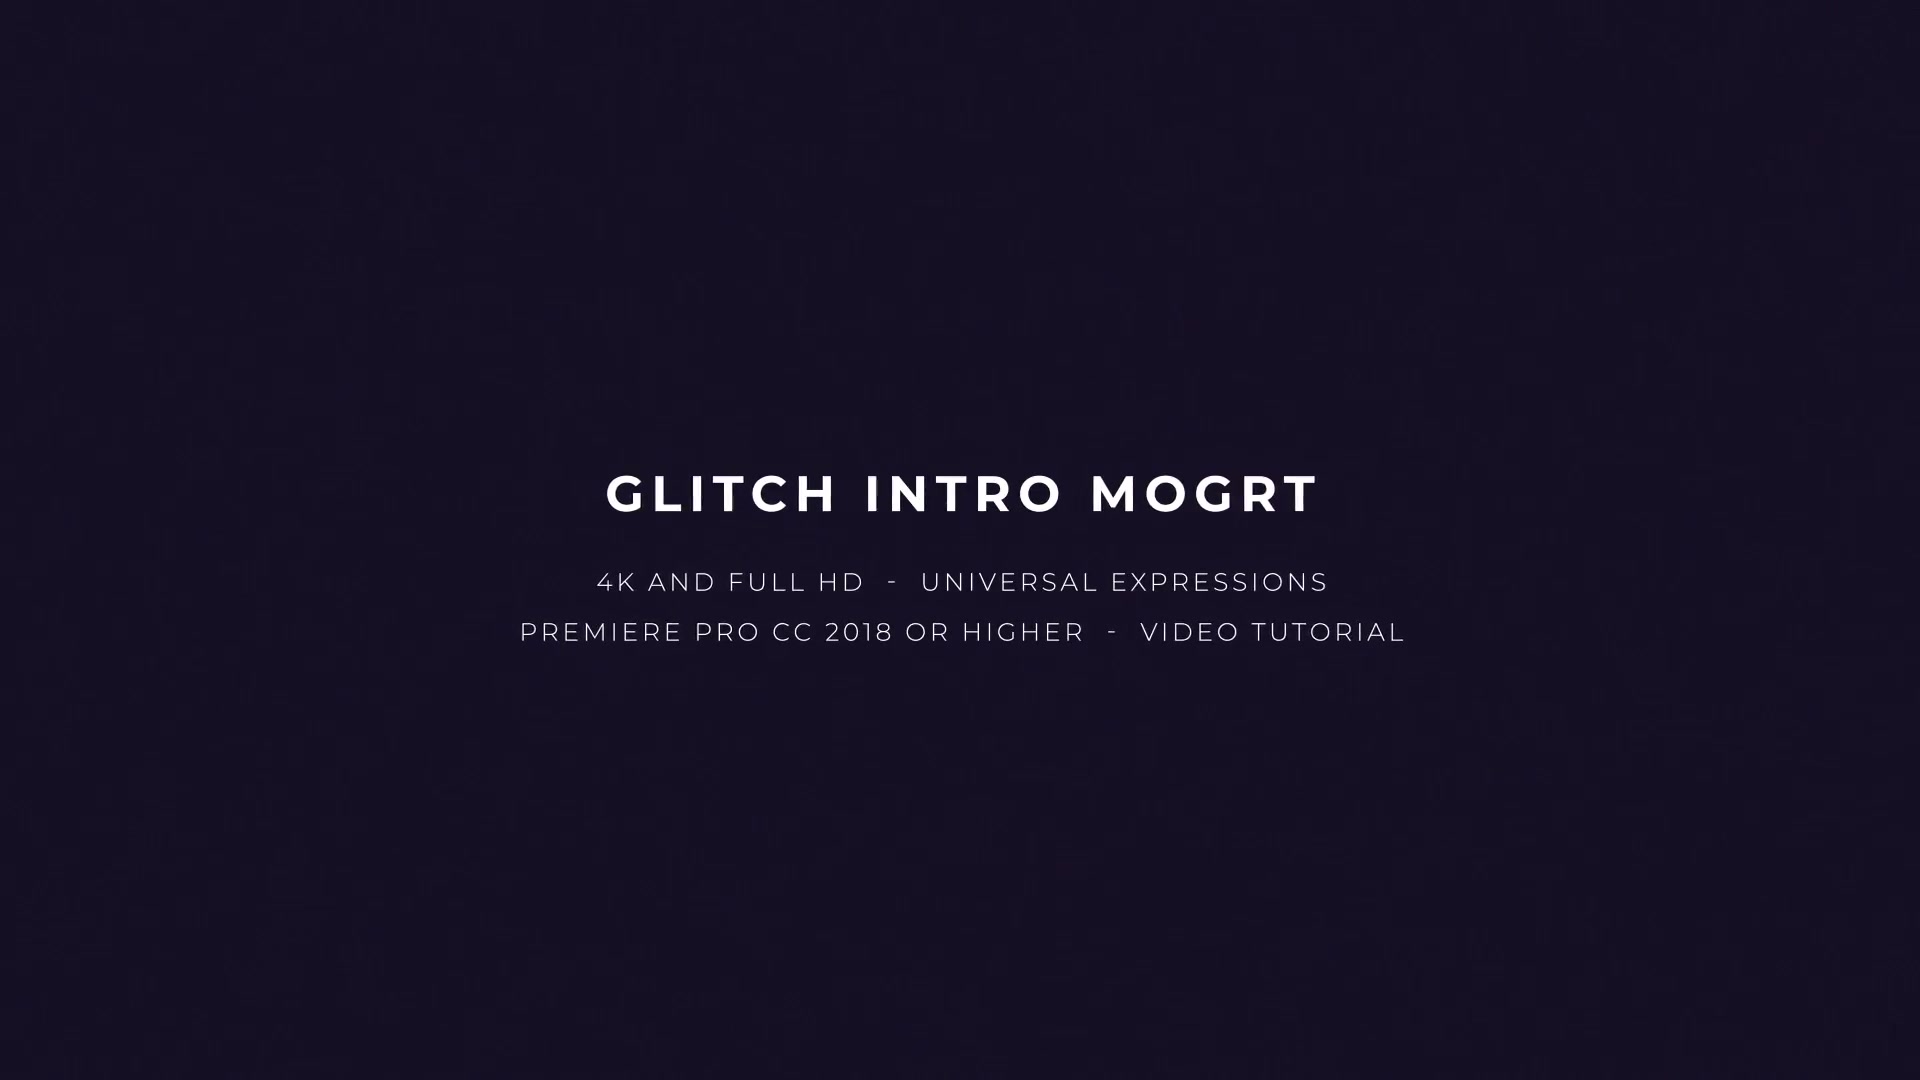 Glitch Intro Mogrt Videohive 22698598 Premiere Pro Image 3